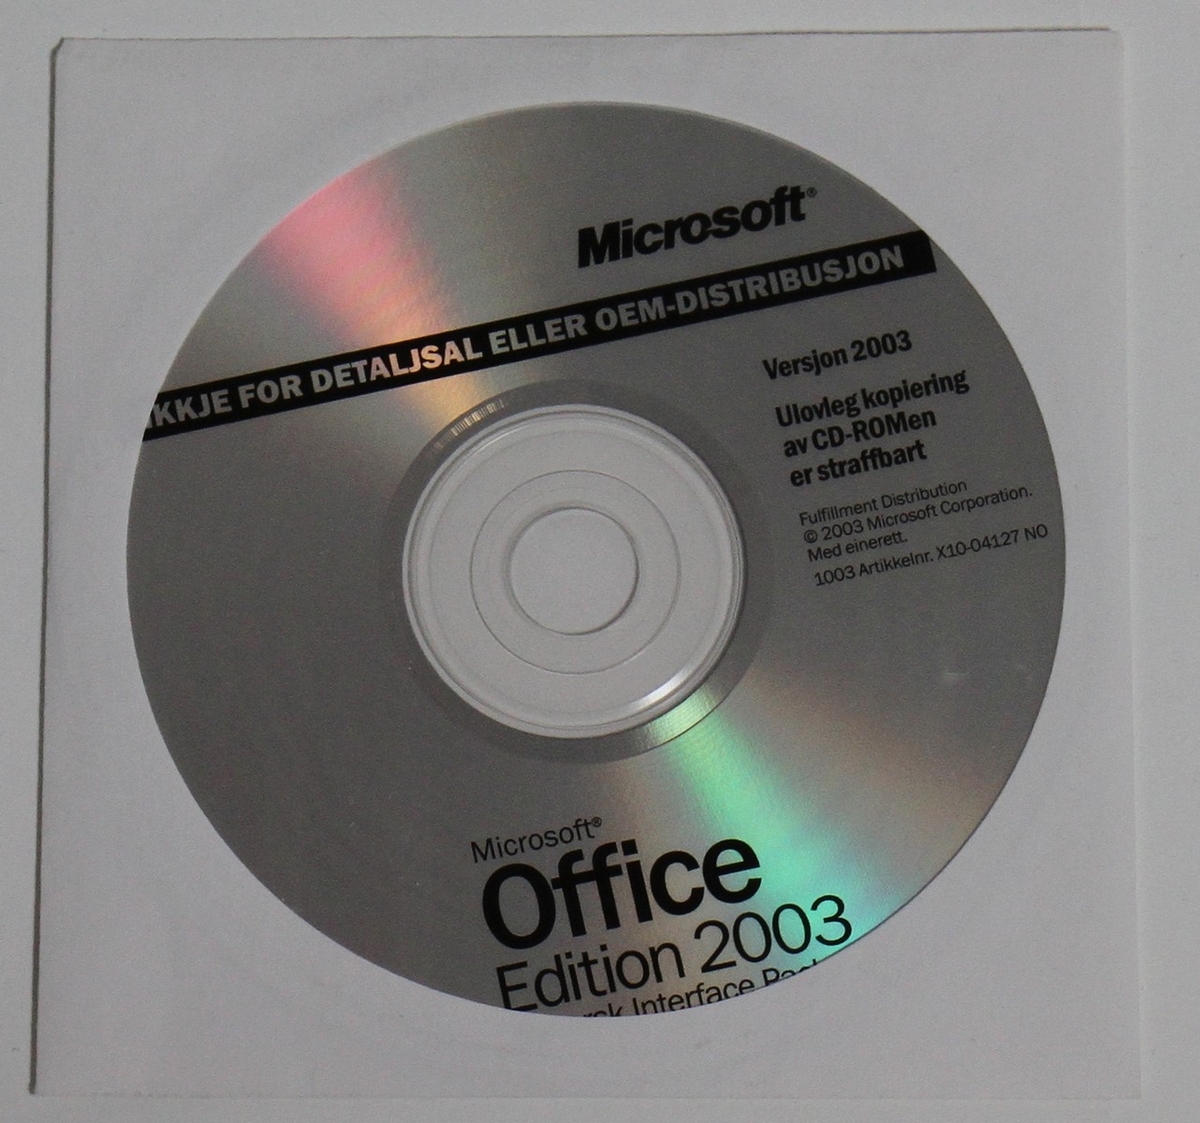 Sirkulær programvare-CD med Microsoft Office Edition 2003 Nynorsk Interface Pack. Dette var den fyrste Office-pakken som kom ut på nynorsk, og ein siger for målrørsla. Språkgrensesnittpakken inkluderte grensesnitt, ordliste, stavekontroll, orddelings- og korrekturverkty. Officepakken inneheldt mellom anna skriveprogrammet Word 2003, rekneprogrammet Excel 2003, presentasjonsprogrammet PowerPoint 2003, og epostlesaren Outlook 2003. CD-skiva ligg inne i ei papirlomme.

Kjelde:
https://nn.wikipedia.org/wiki/Nynorsk_programvare (Lesedato: 31.07.2020)